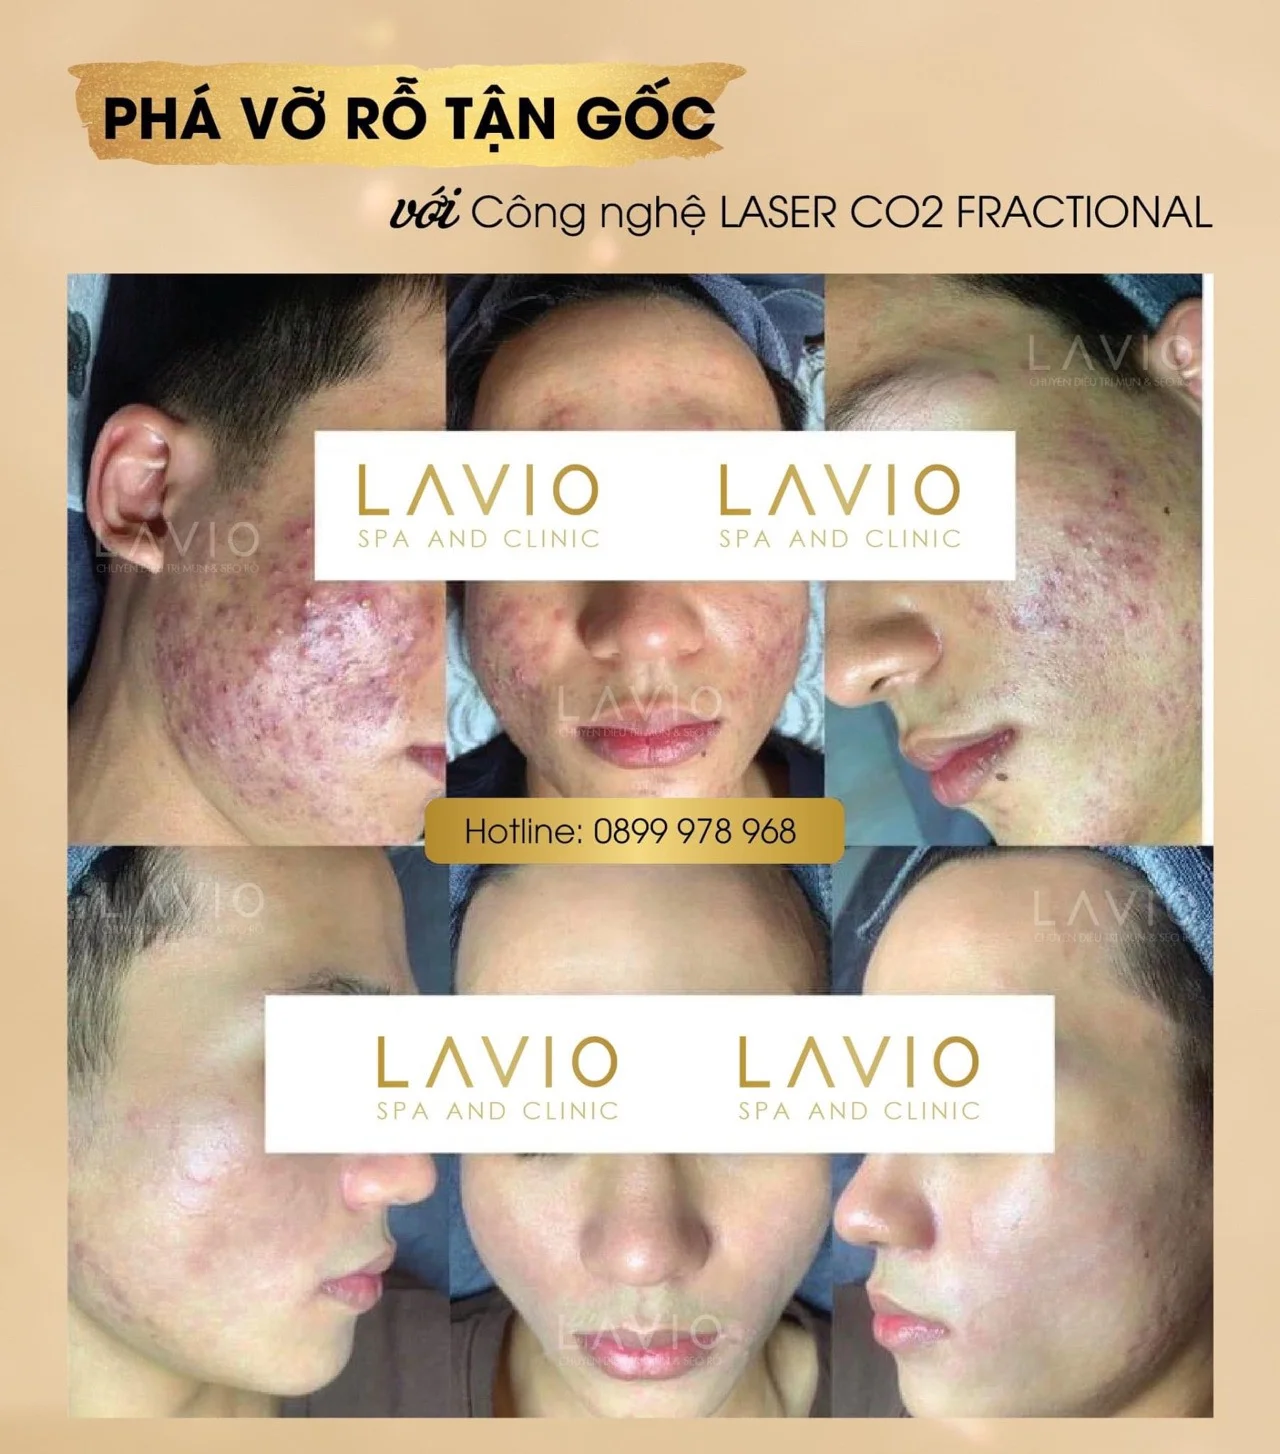 LAVIO Spa & Clinic Cần Thơ trị sẹo uy tín